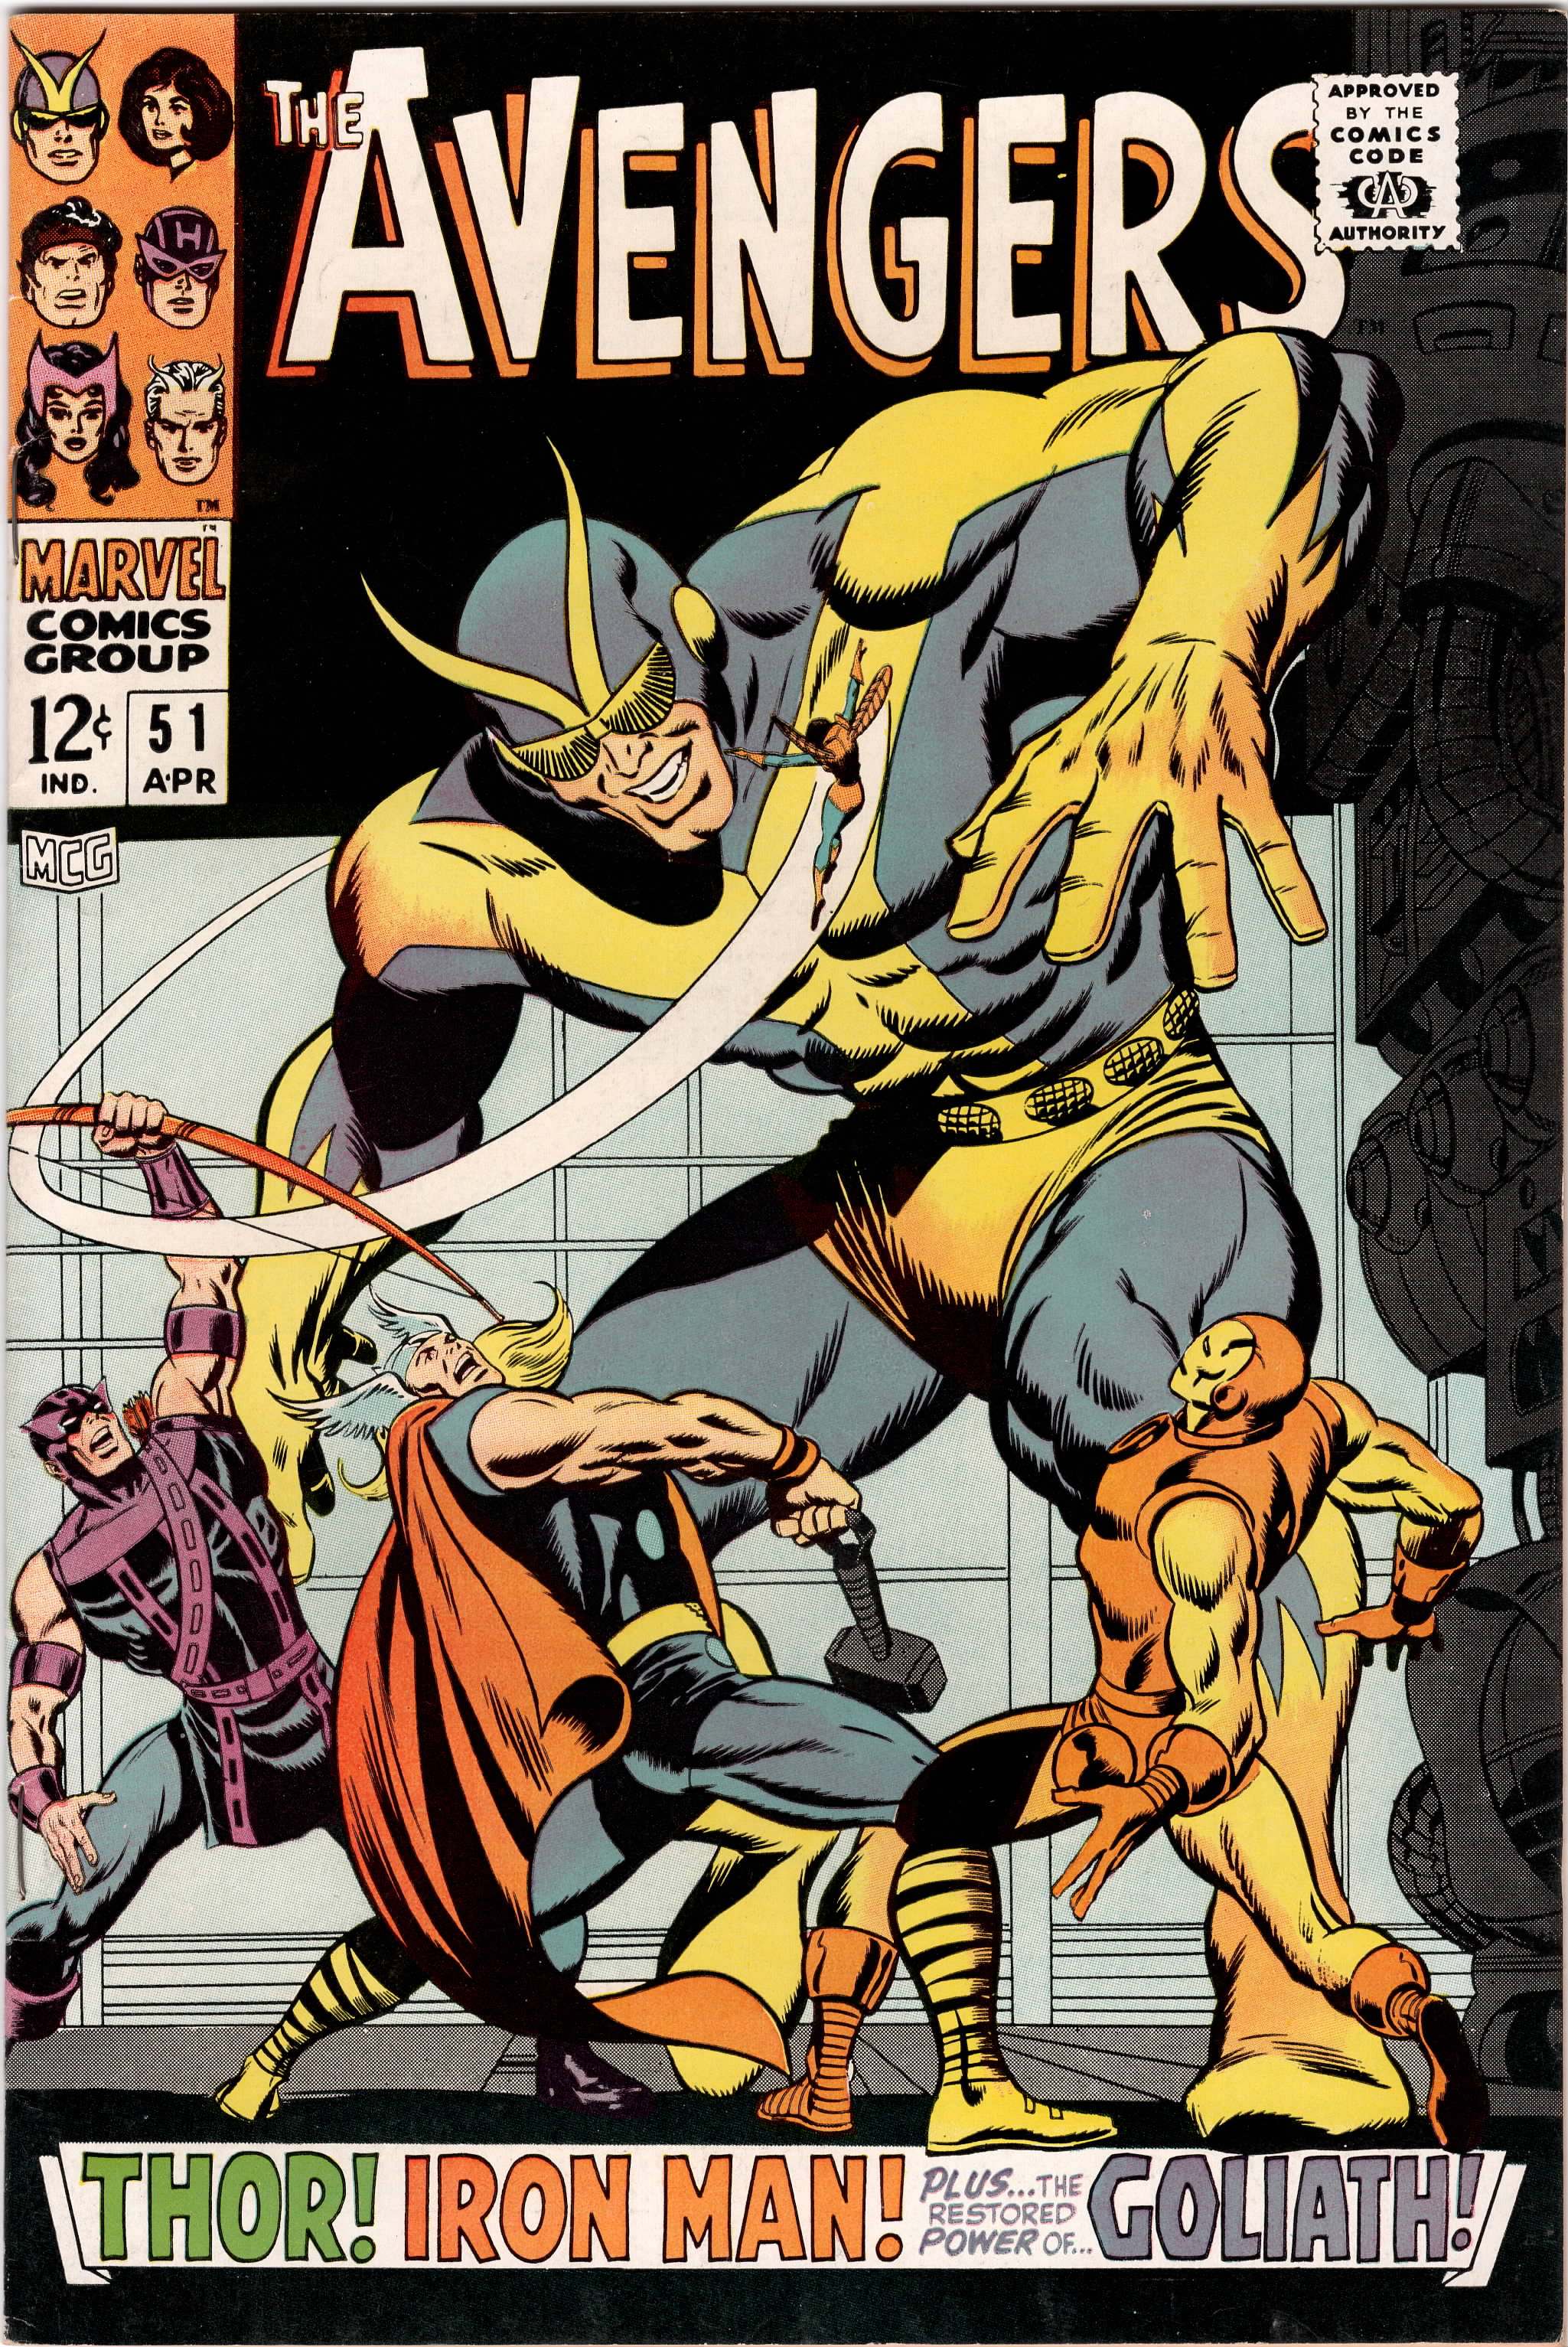 Avengers #051